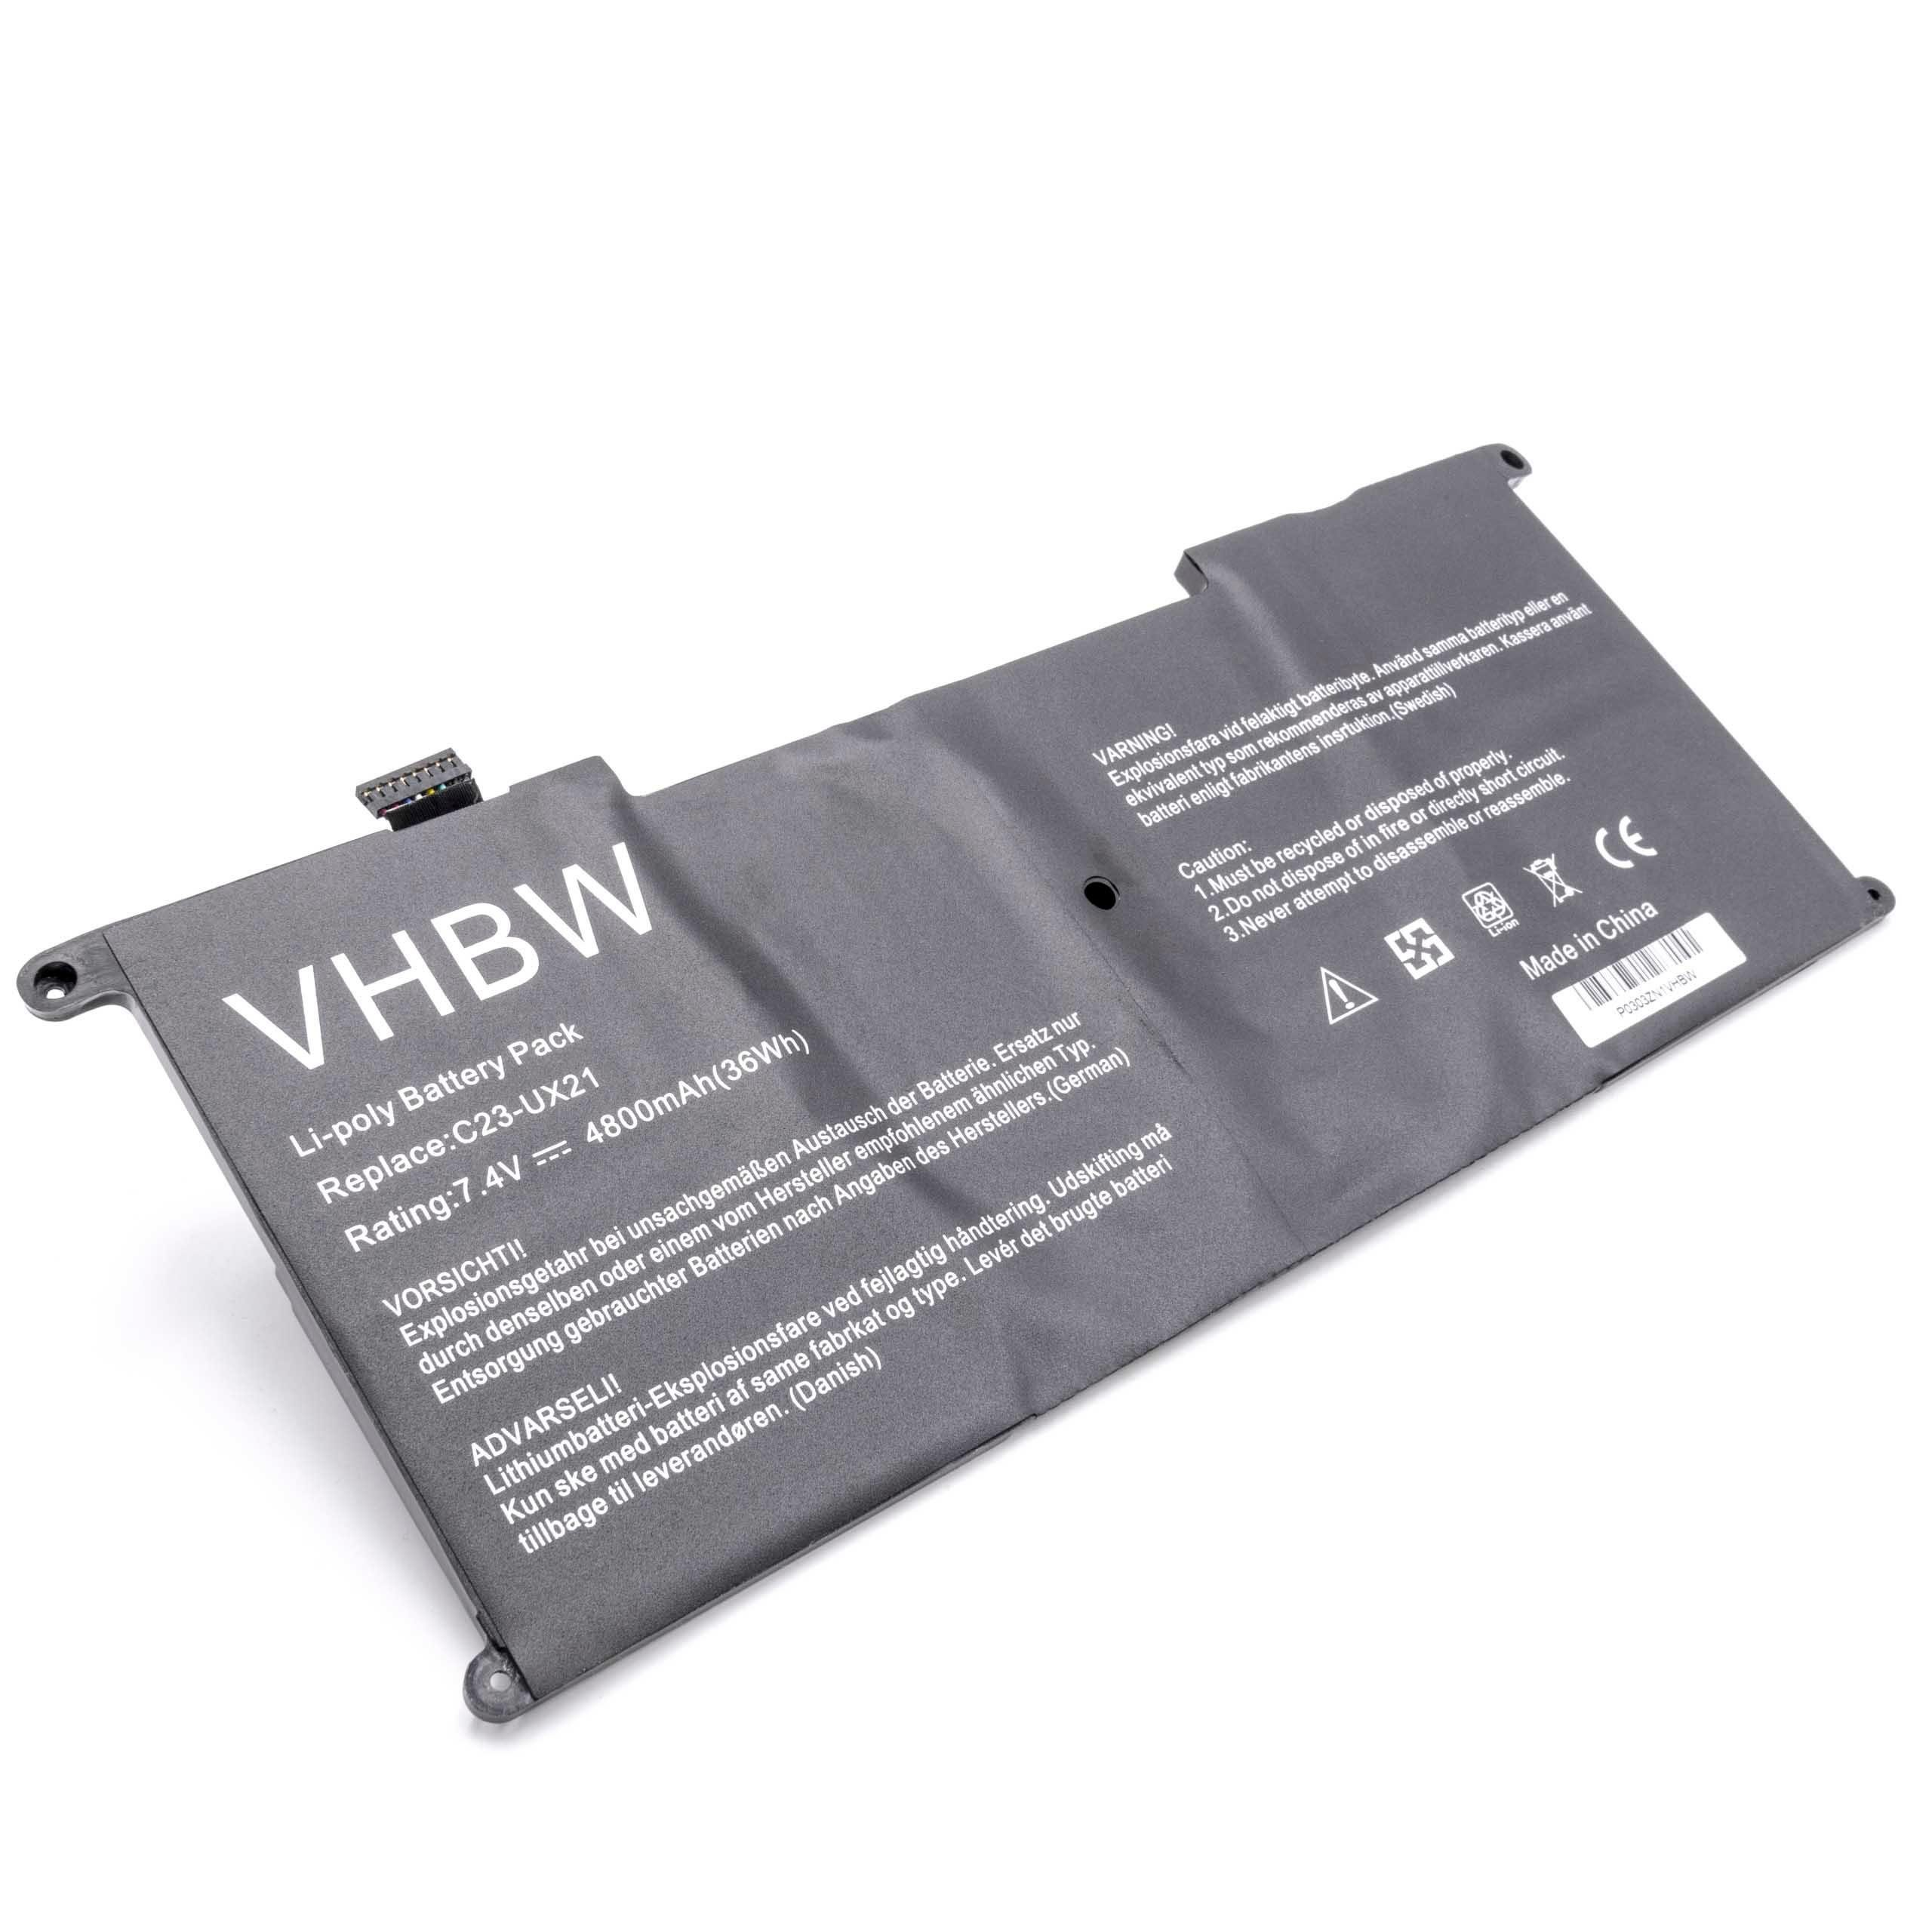 vhbw passend für Asus ZenBook UX21E-KX004V, UX21E-KX004X, UX21E-KX007V, Laptop-Akku 4800 mAh